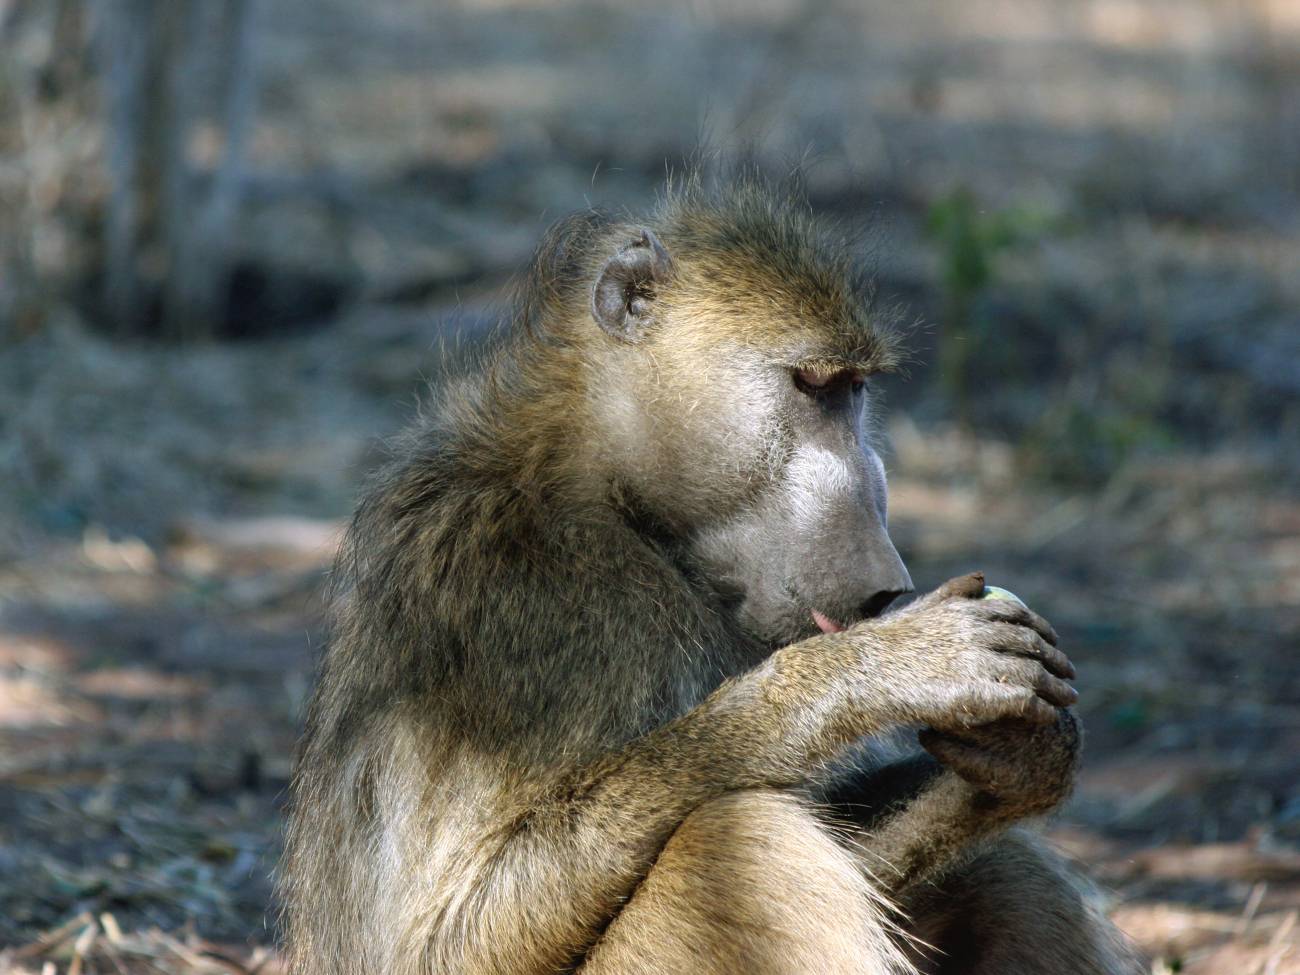 Los babuinos ingieren algunas plantas para evitar parásitos. / Volker Schumann